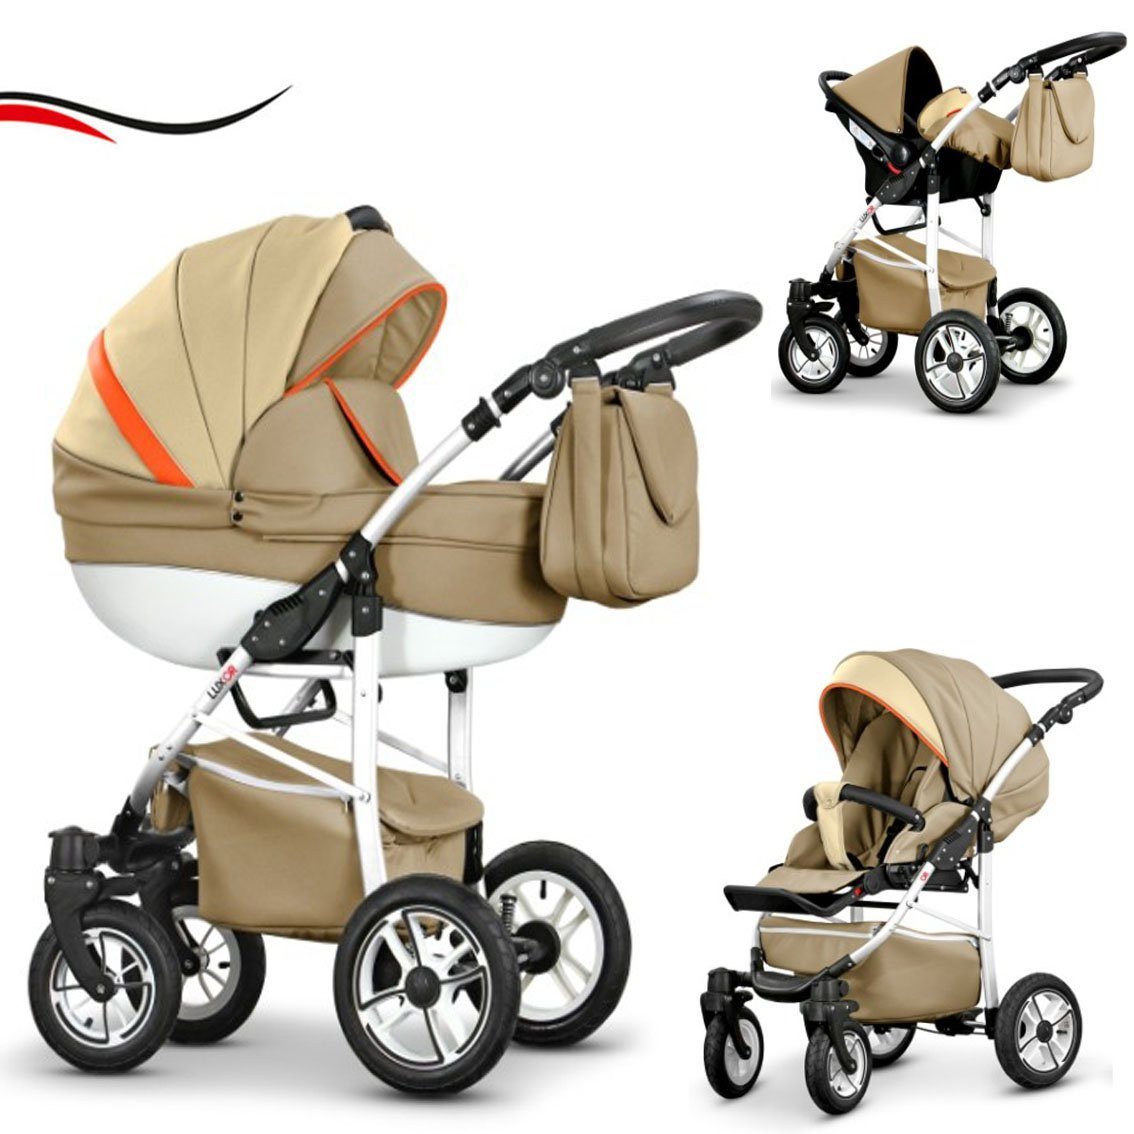 babies-on-wheels Kombi-Kinderwagen 3 - 29 Sand-Beige in Farben ECO Cosmo in Teile Kunstleder Kinderwagen-Set - 16 1